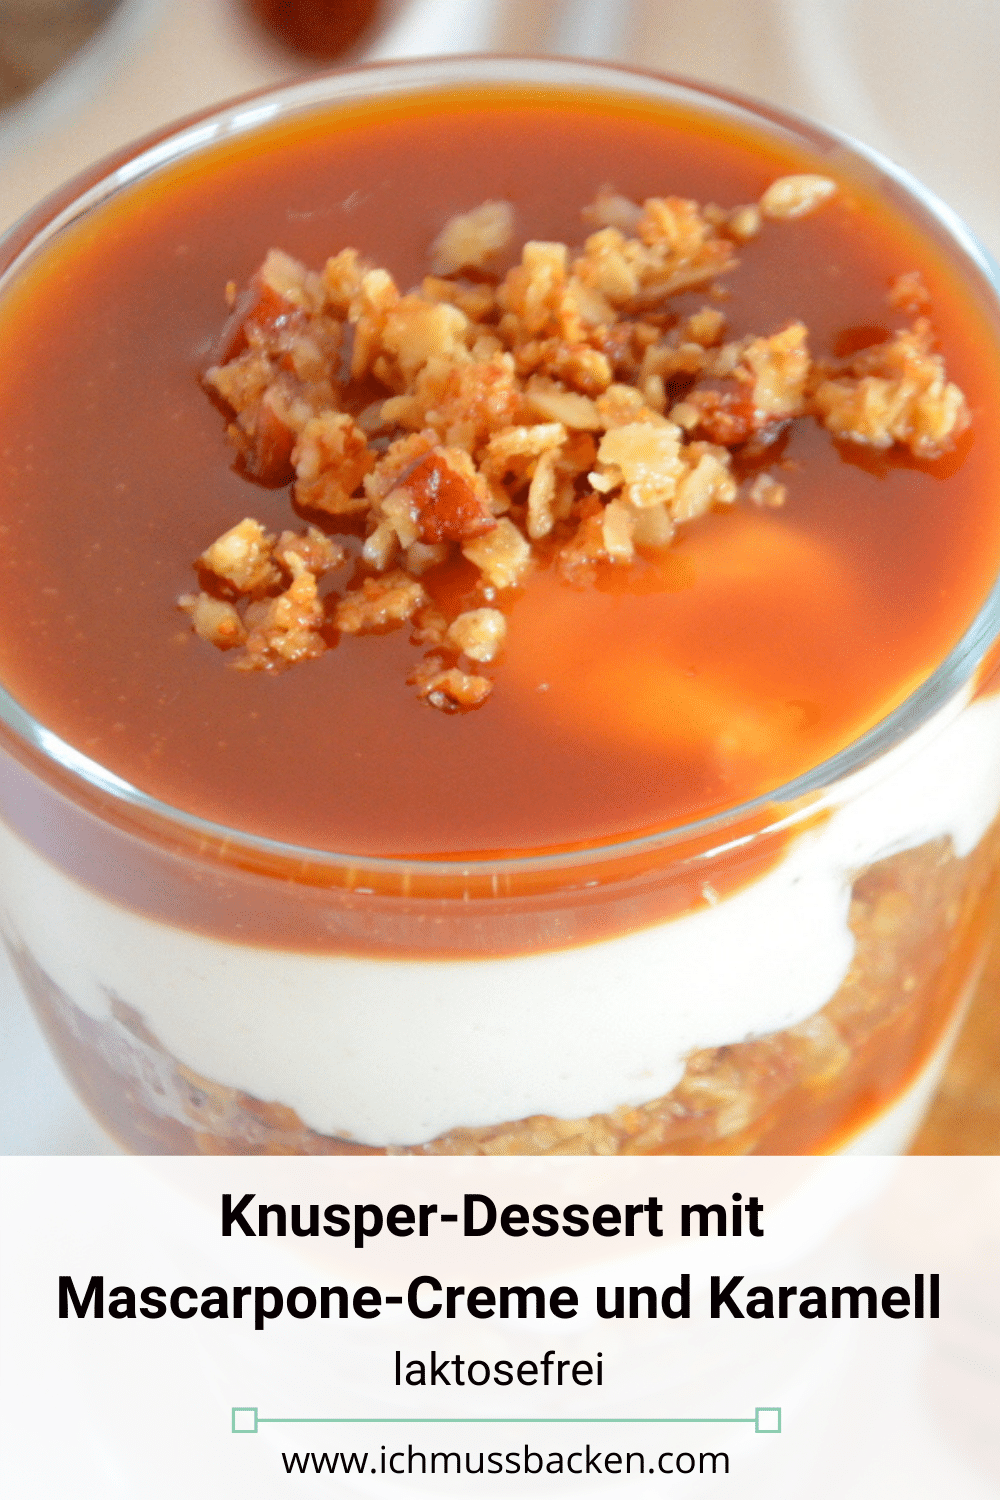 Knusper-Dessert mit Mascarpone-Creme und Karamell